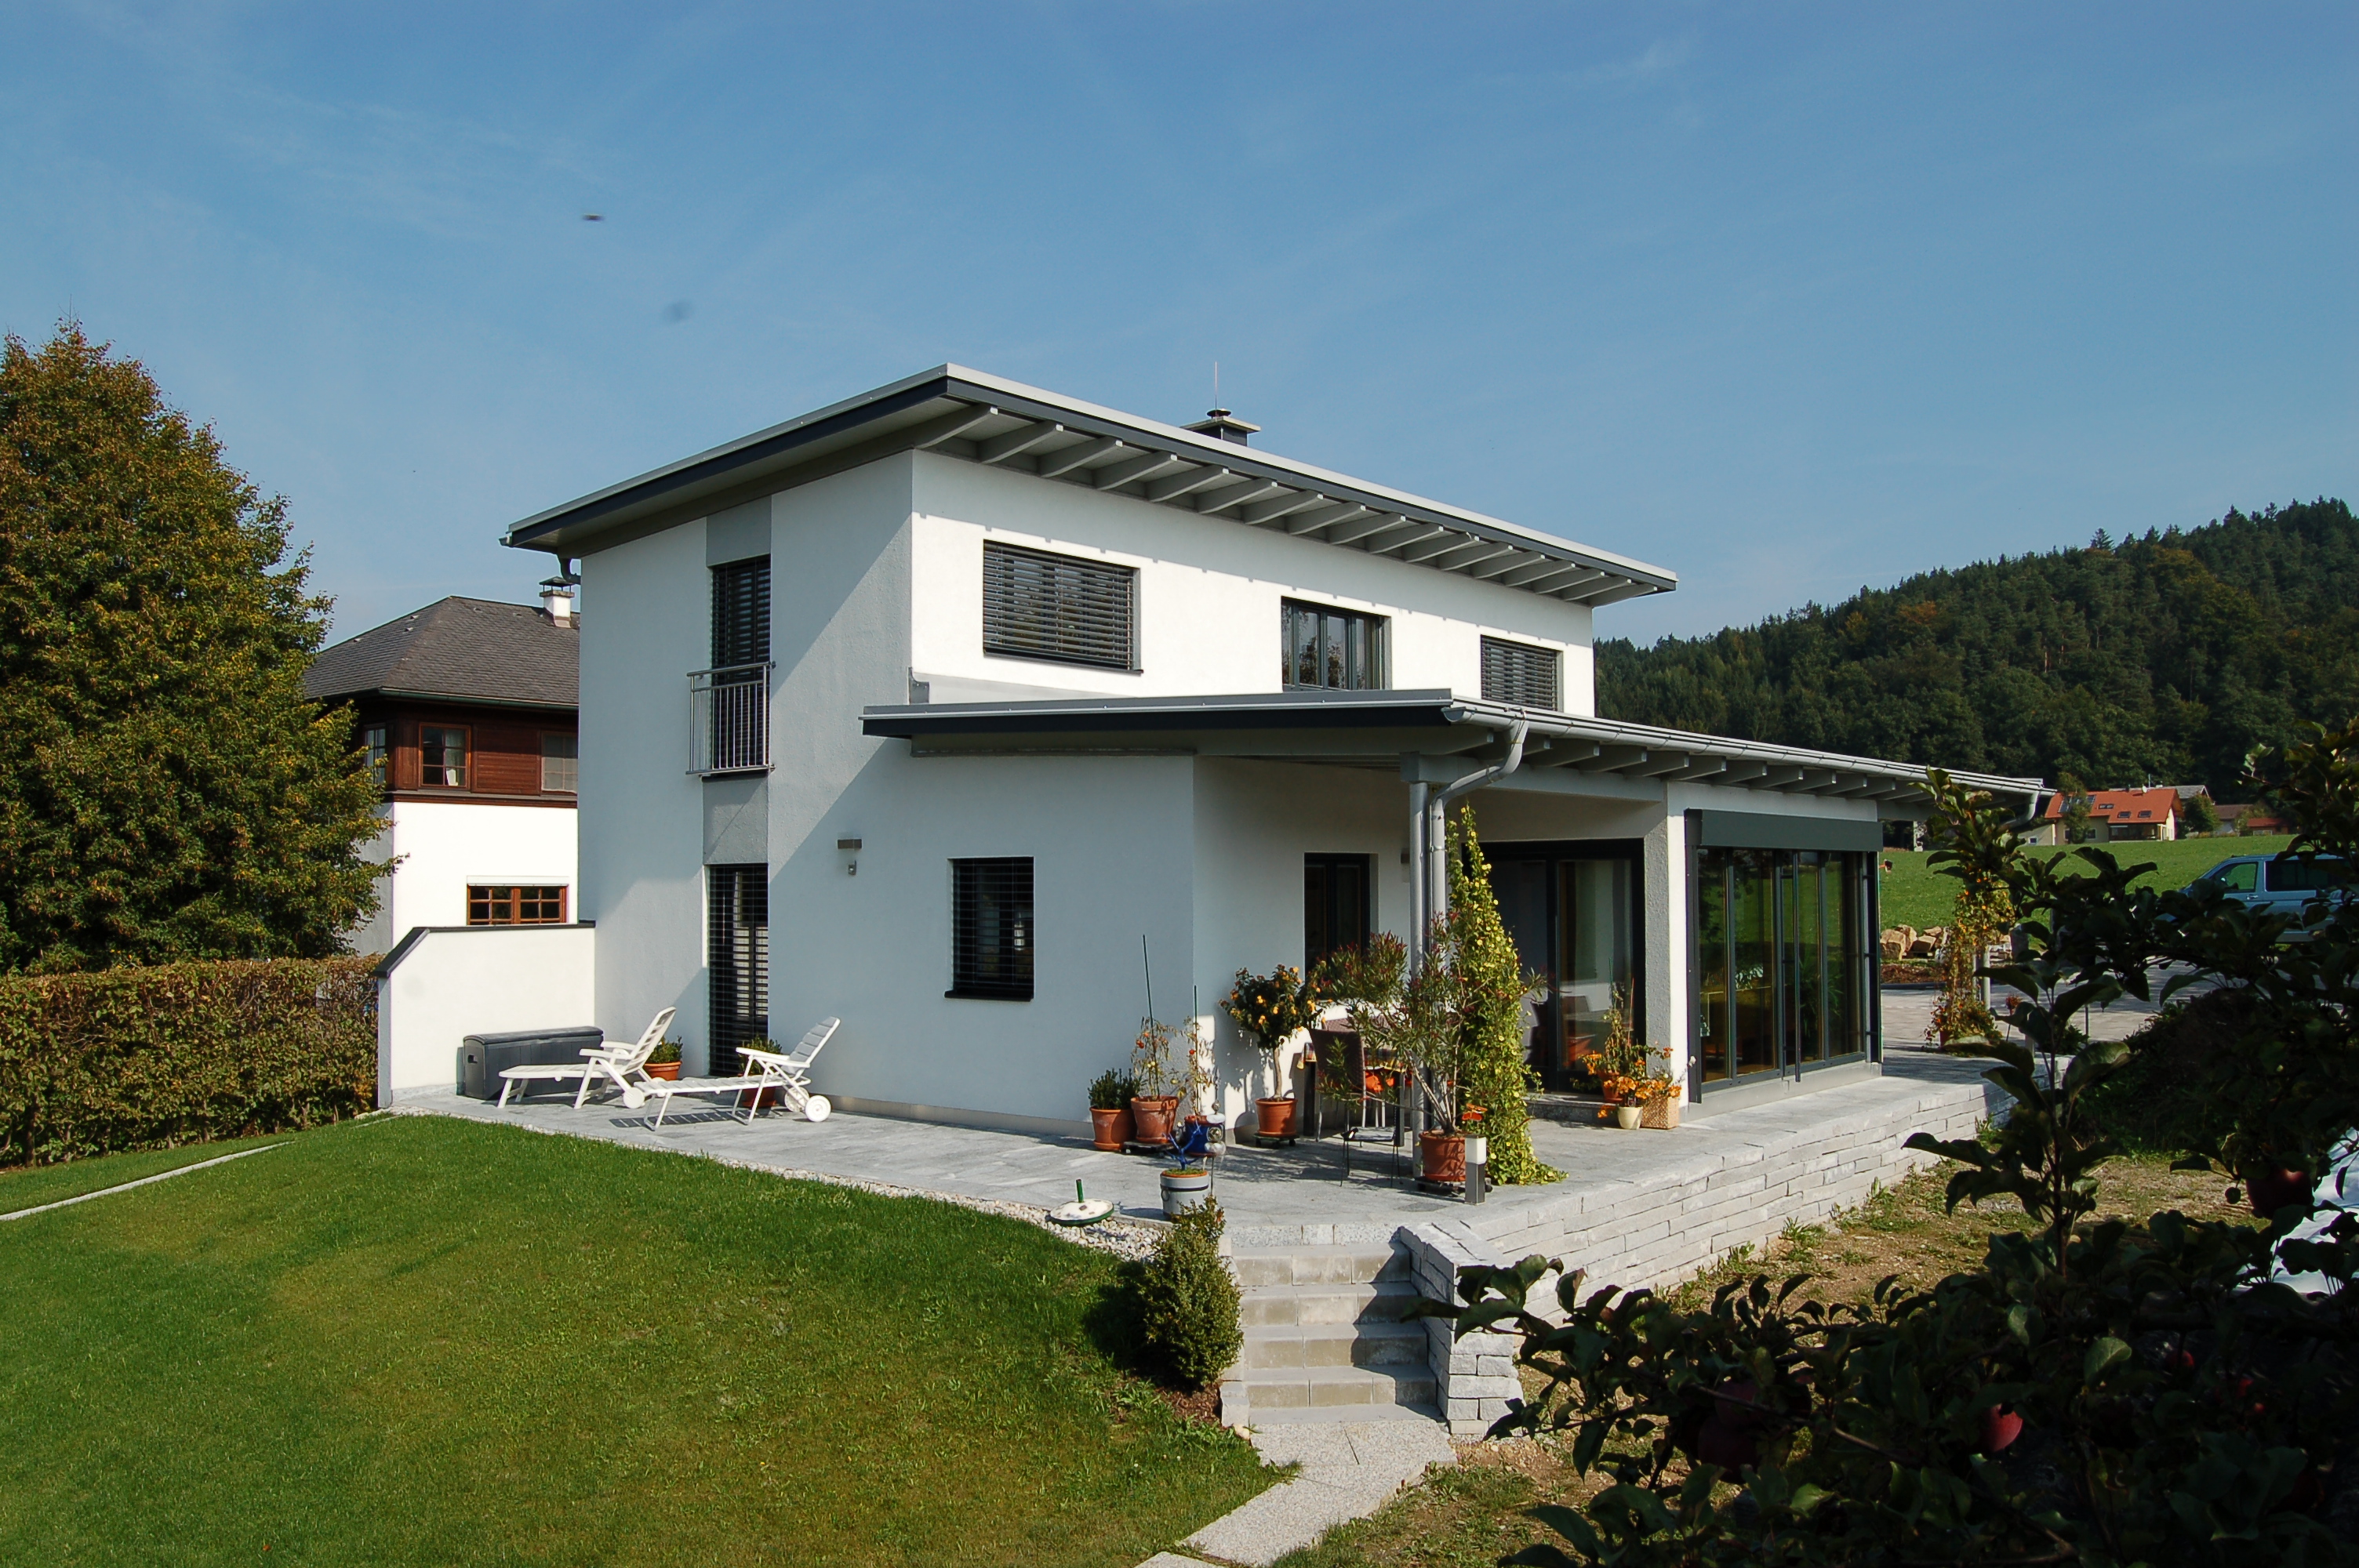 Wunschhaus Holzhausbau